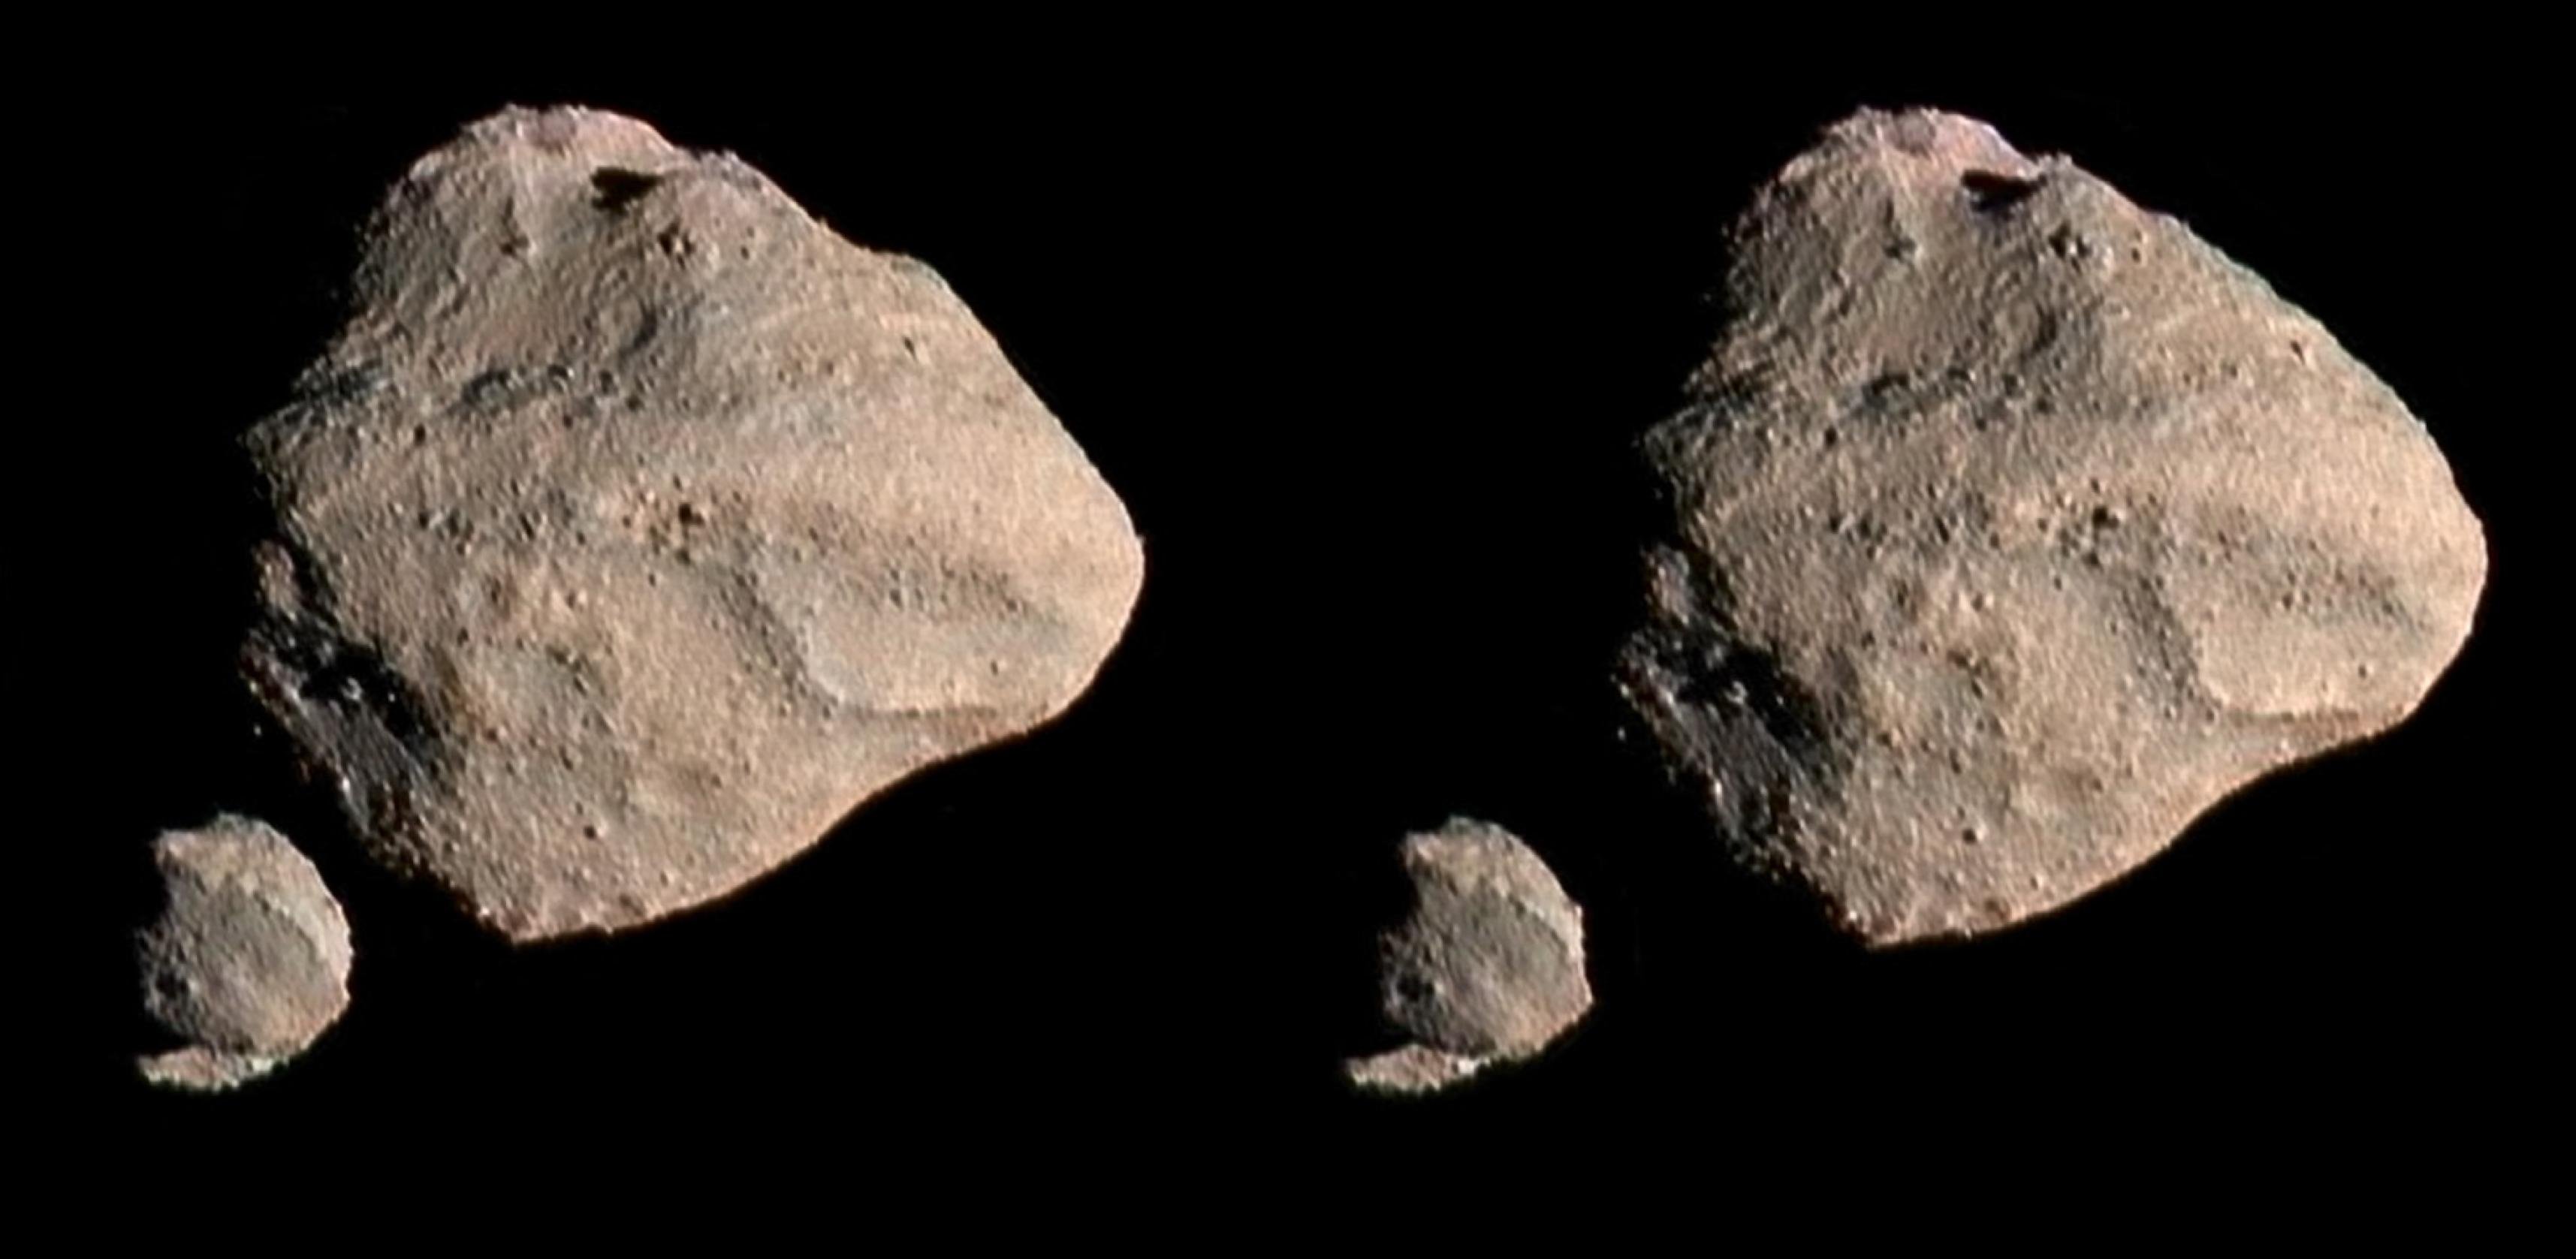 Podwójne zdjęcie asteroidy w kształcie ziemniaka z małym księżycem na tle czerni kosmosu.  Aby doświadczyć wrażenia przestrzennego, patrzy się na obraz albo w widoku stereoskopowym, albo z okiem skupionym na nieskończoności, tak że lewe oko postrzega lewy obraz częściowy, a prawe oko postrzega prawy obraz częściowy.